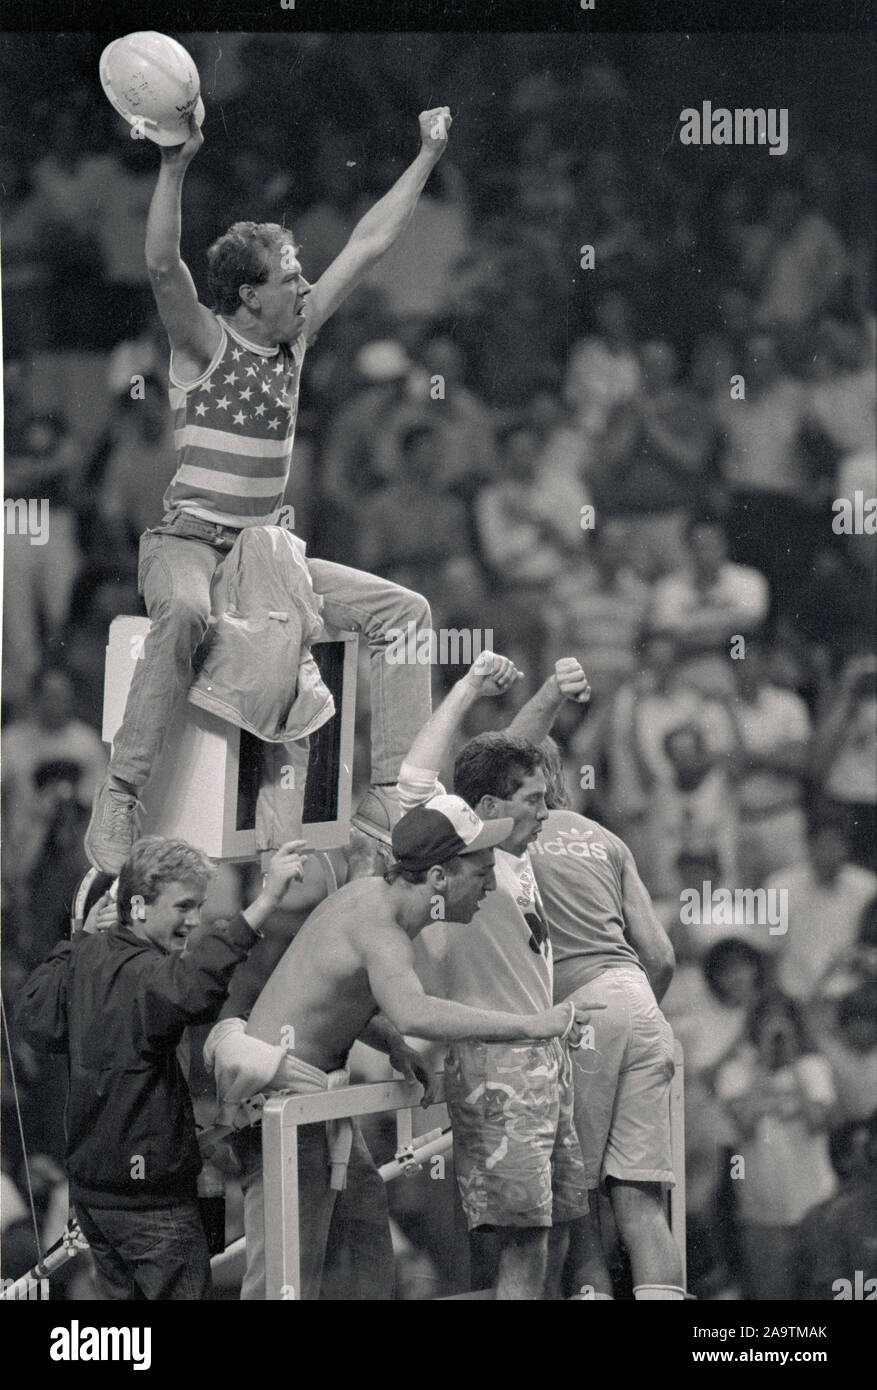 Boston Celtics Fans feiern die 1986 NBA Meisterschaft über die HOuston Rockets im Boston Garden in Boston, Ma USA Foto gewinnen von Bill belknap Stockfoto